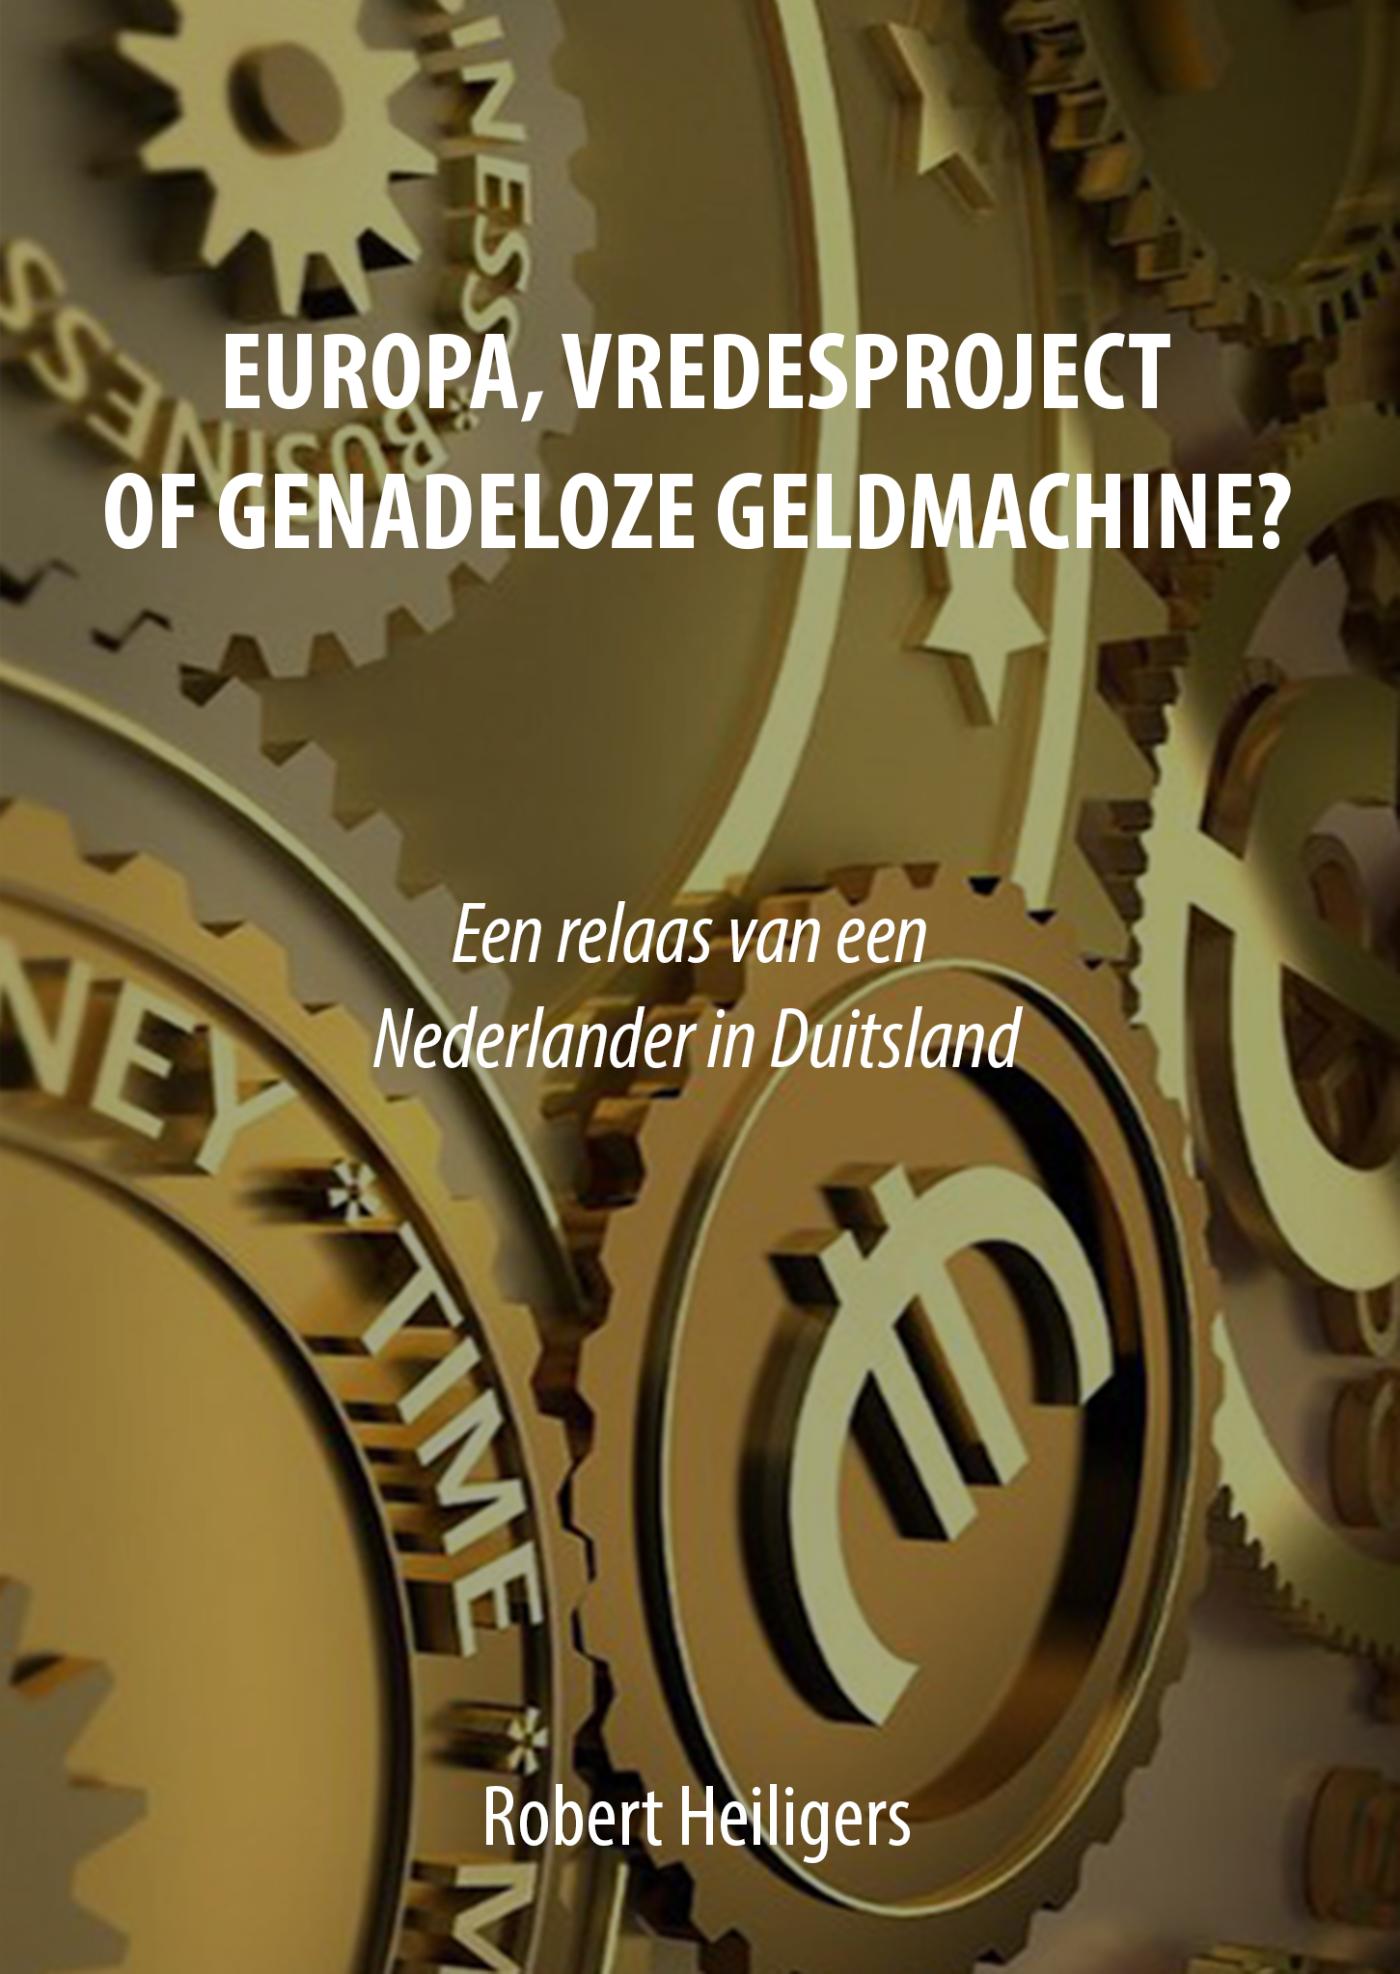 Europa, vredesproject of genadeloze geldmachine? (Ebook)